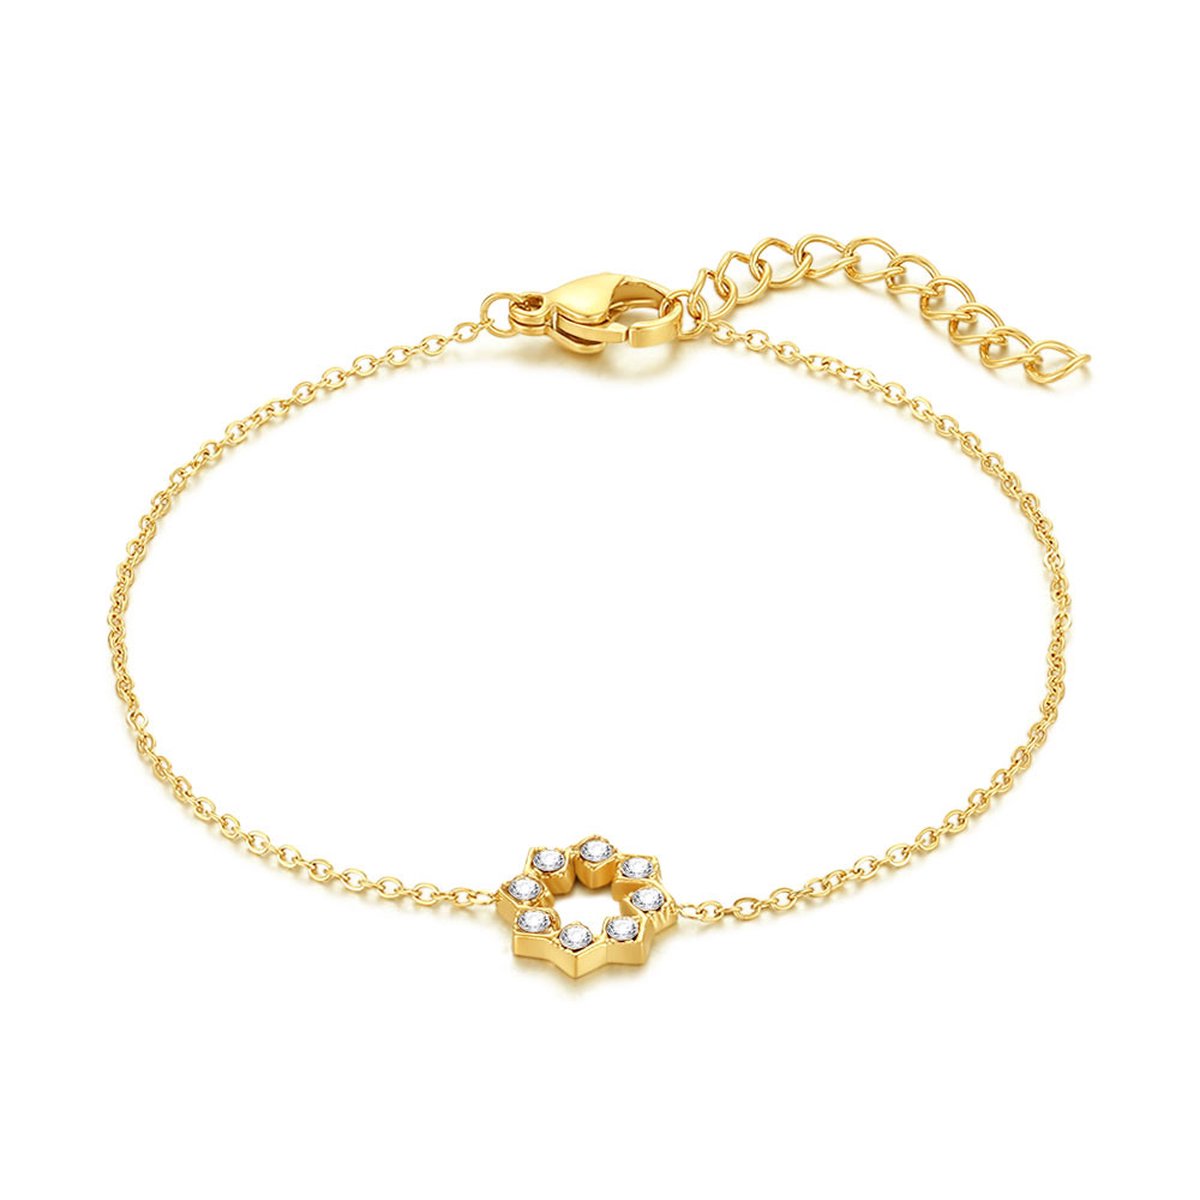 Twice As Nice Armband in goudkleurig edelstaal, bloem 16 cm+3 cm